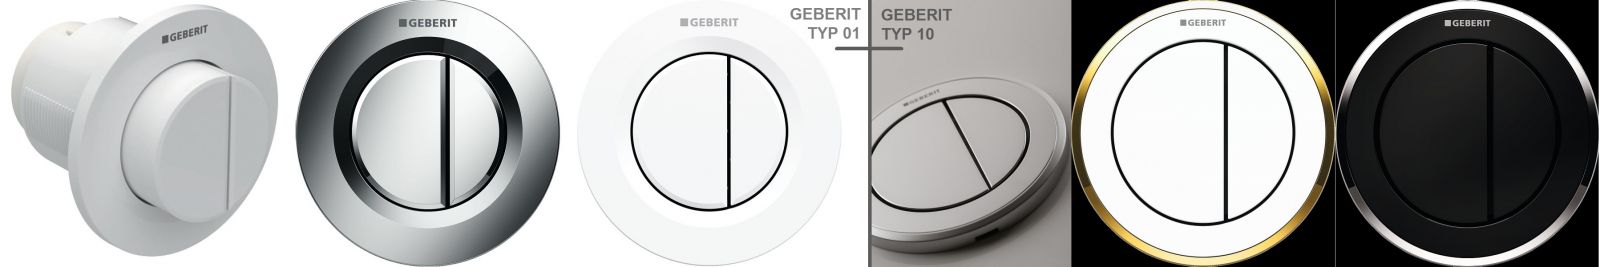 Geberit Typ 01 (LEWA STRONA ZDJĘCIA), przycisk podtynkowy, wersja płaska i wypukła: wersja płaska ma szeroką rozetkę i delikatnie zagłębione przyciski, dostępne kolory to biały-alpin oraz chrom błyszczący i matowy; przycisk wypukły jest biały. Geberit Typ 10 (prawa strona zdjęcia) ma wąską rozetkę i przyciski zlicowane, a z zewnątrz ozdobny pierścień – dostępne są różne kombinacje kolorystyczne (fot. GEBERIT)